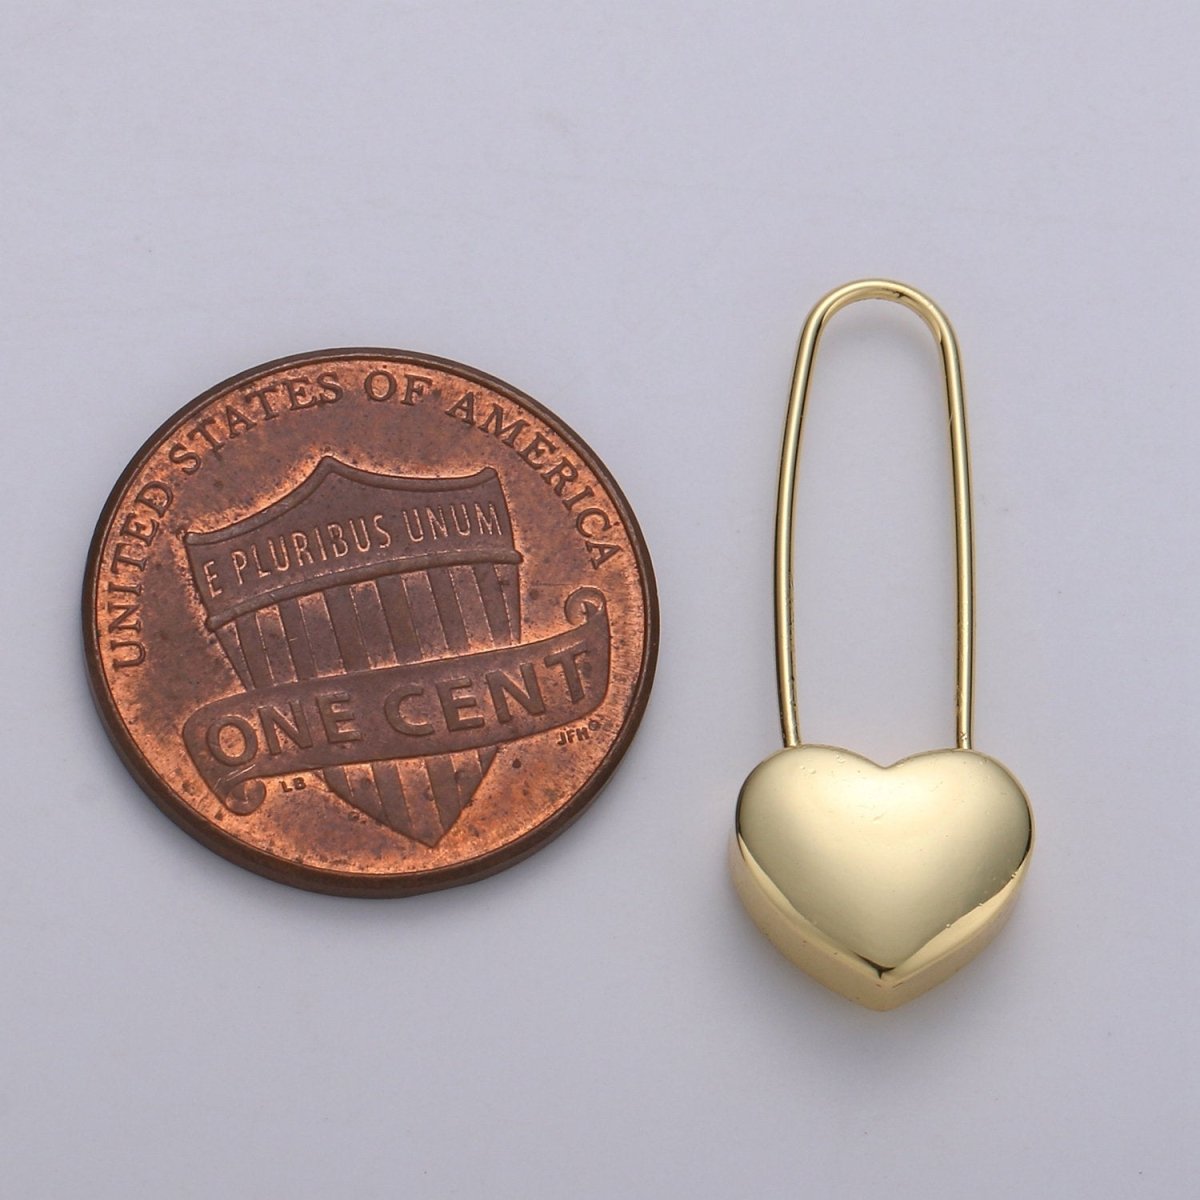 24K Dangle Heart Earrings - Heart Earrings - Gold Dangle - Simple Everyday Earrings 18mm - DLUXCA